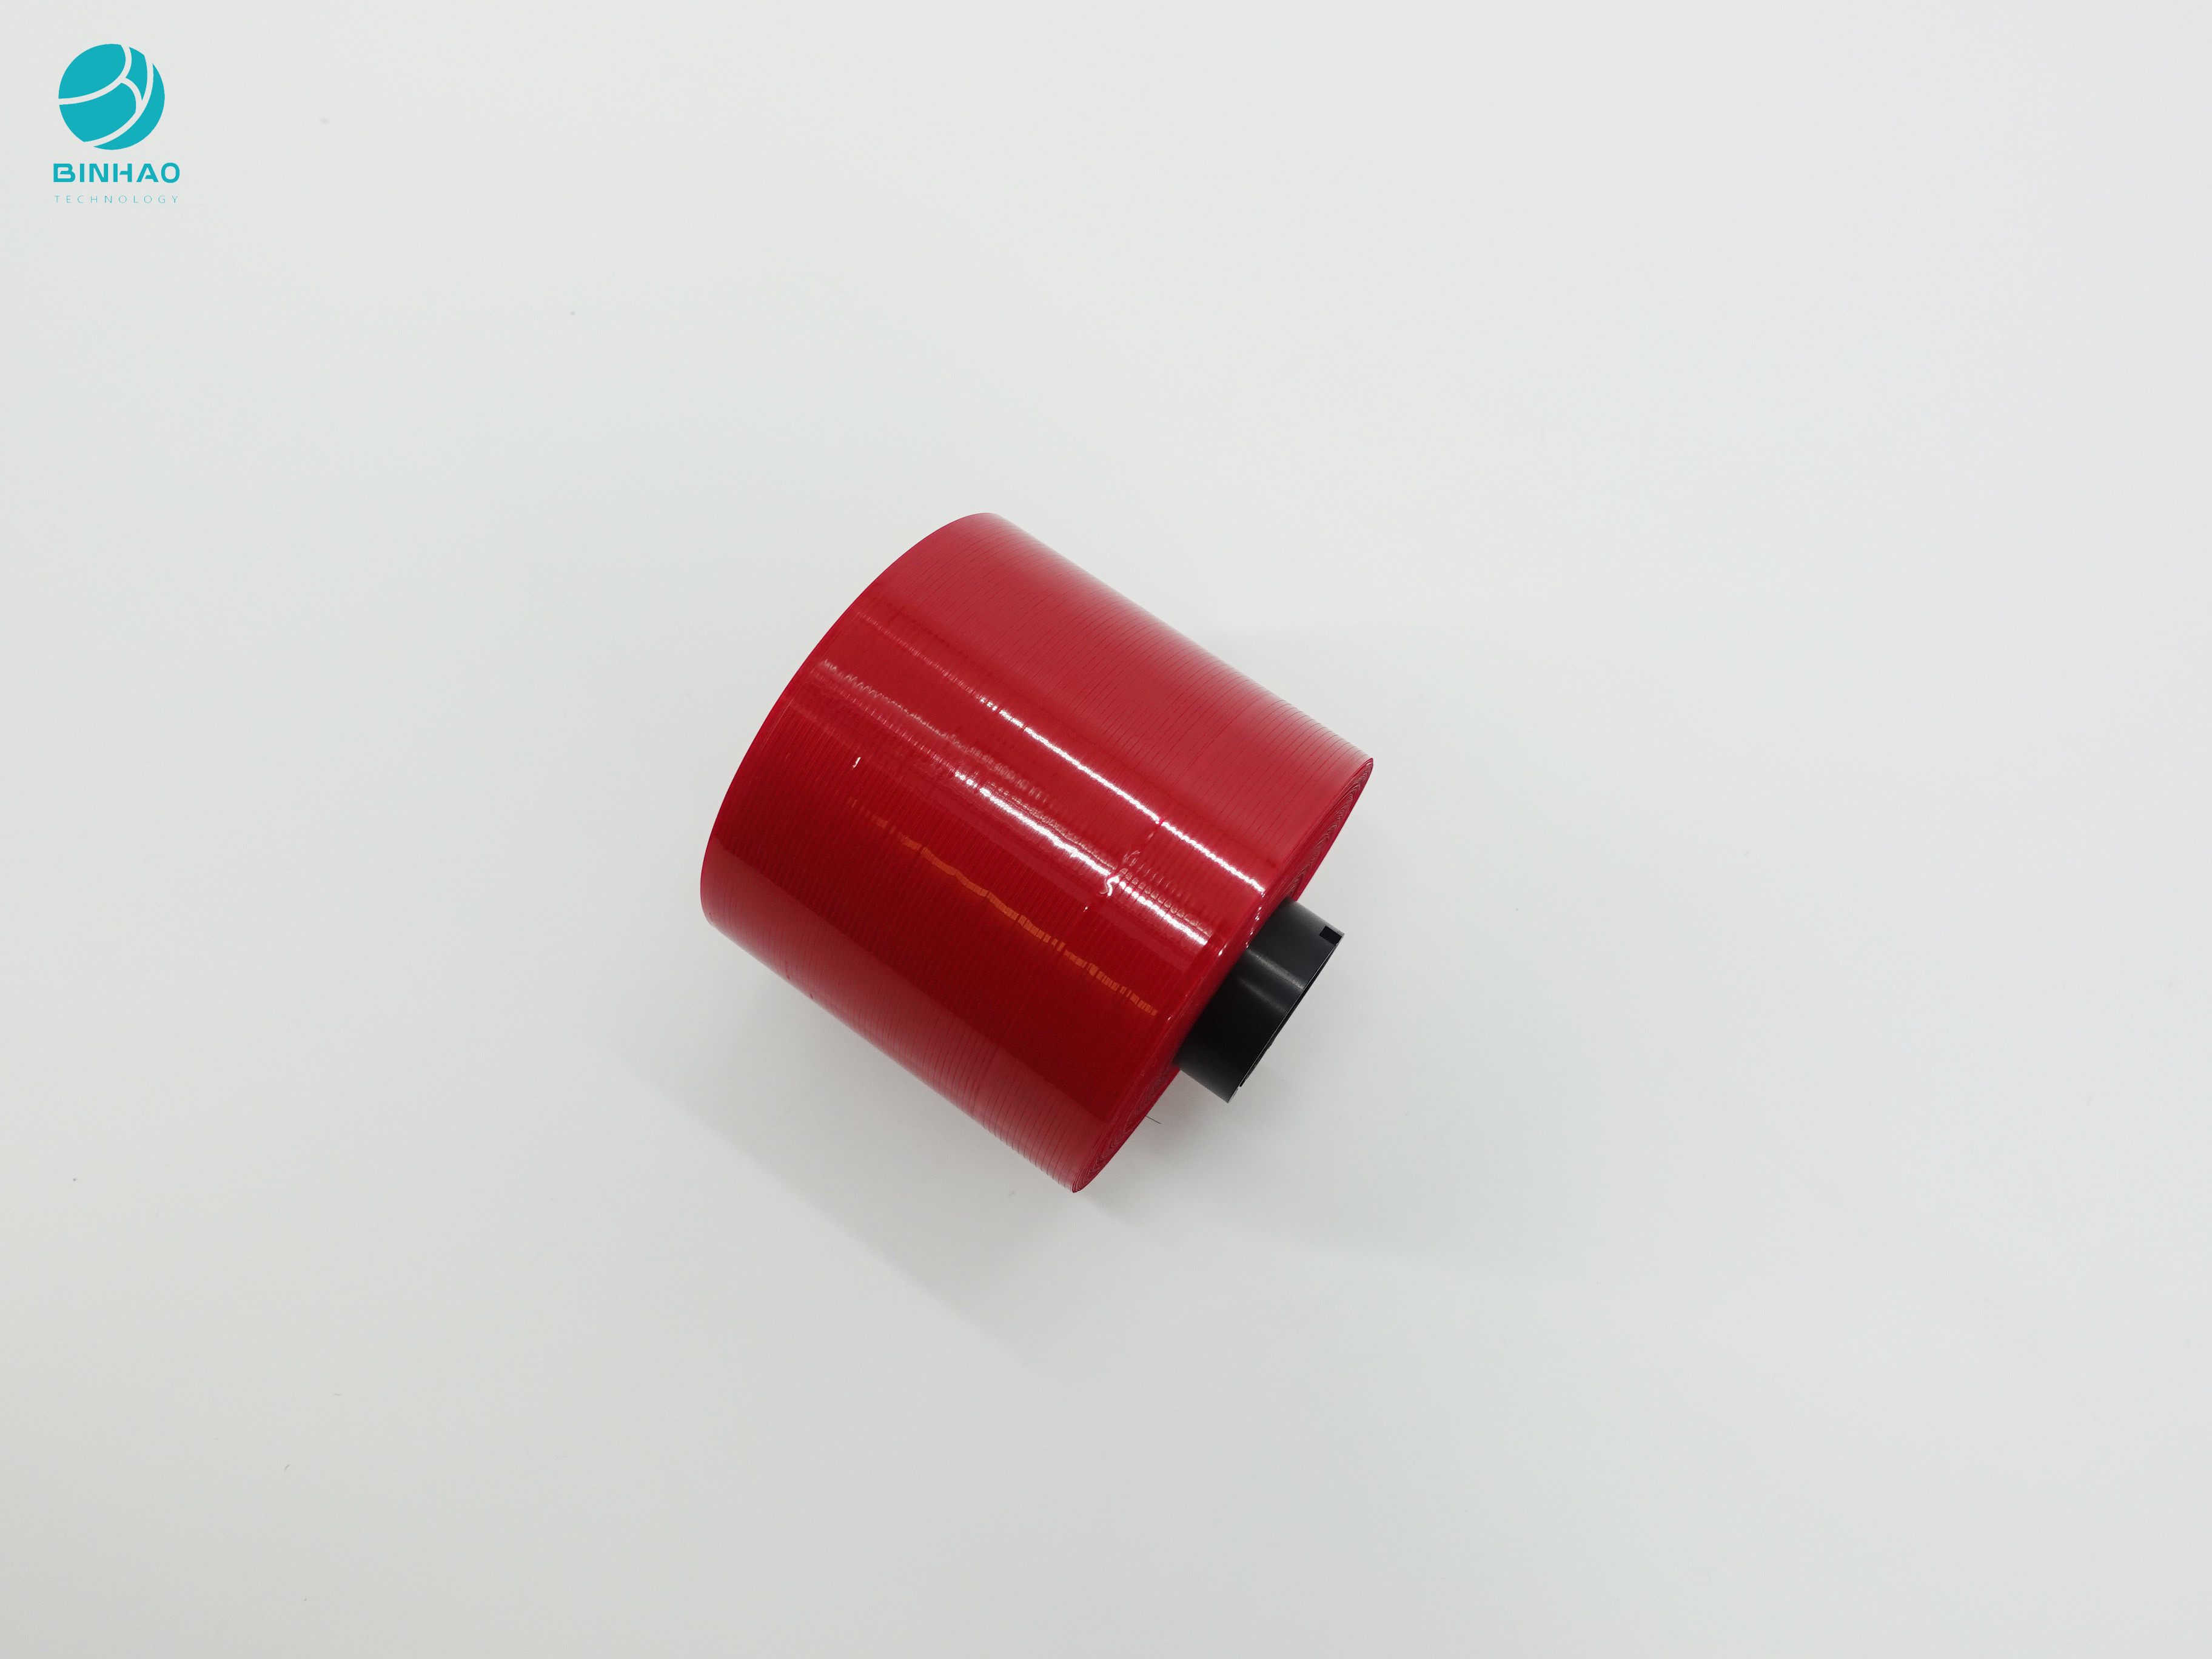 Sigara Kutusu Ambalajı İçin Koyu Kırmızı Sahteciliğe Karşı Tasarım 3mm Gözyaşı Bandı